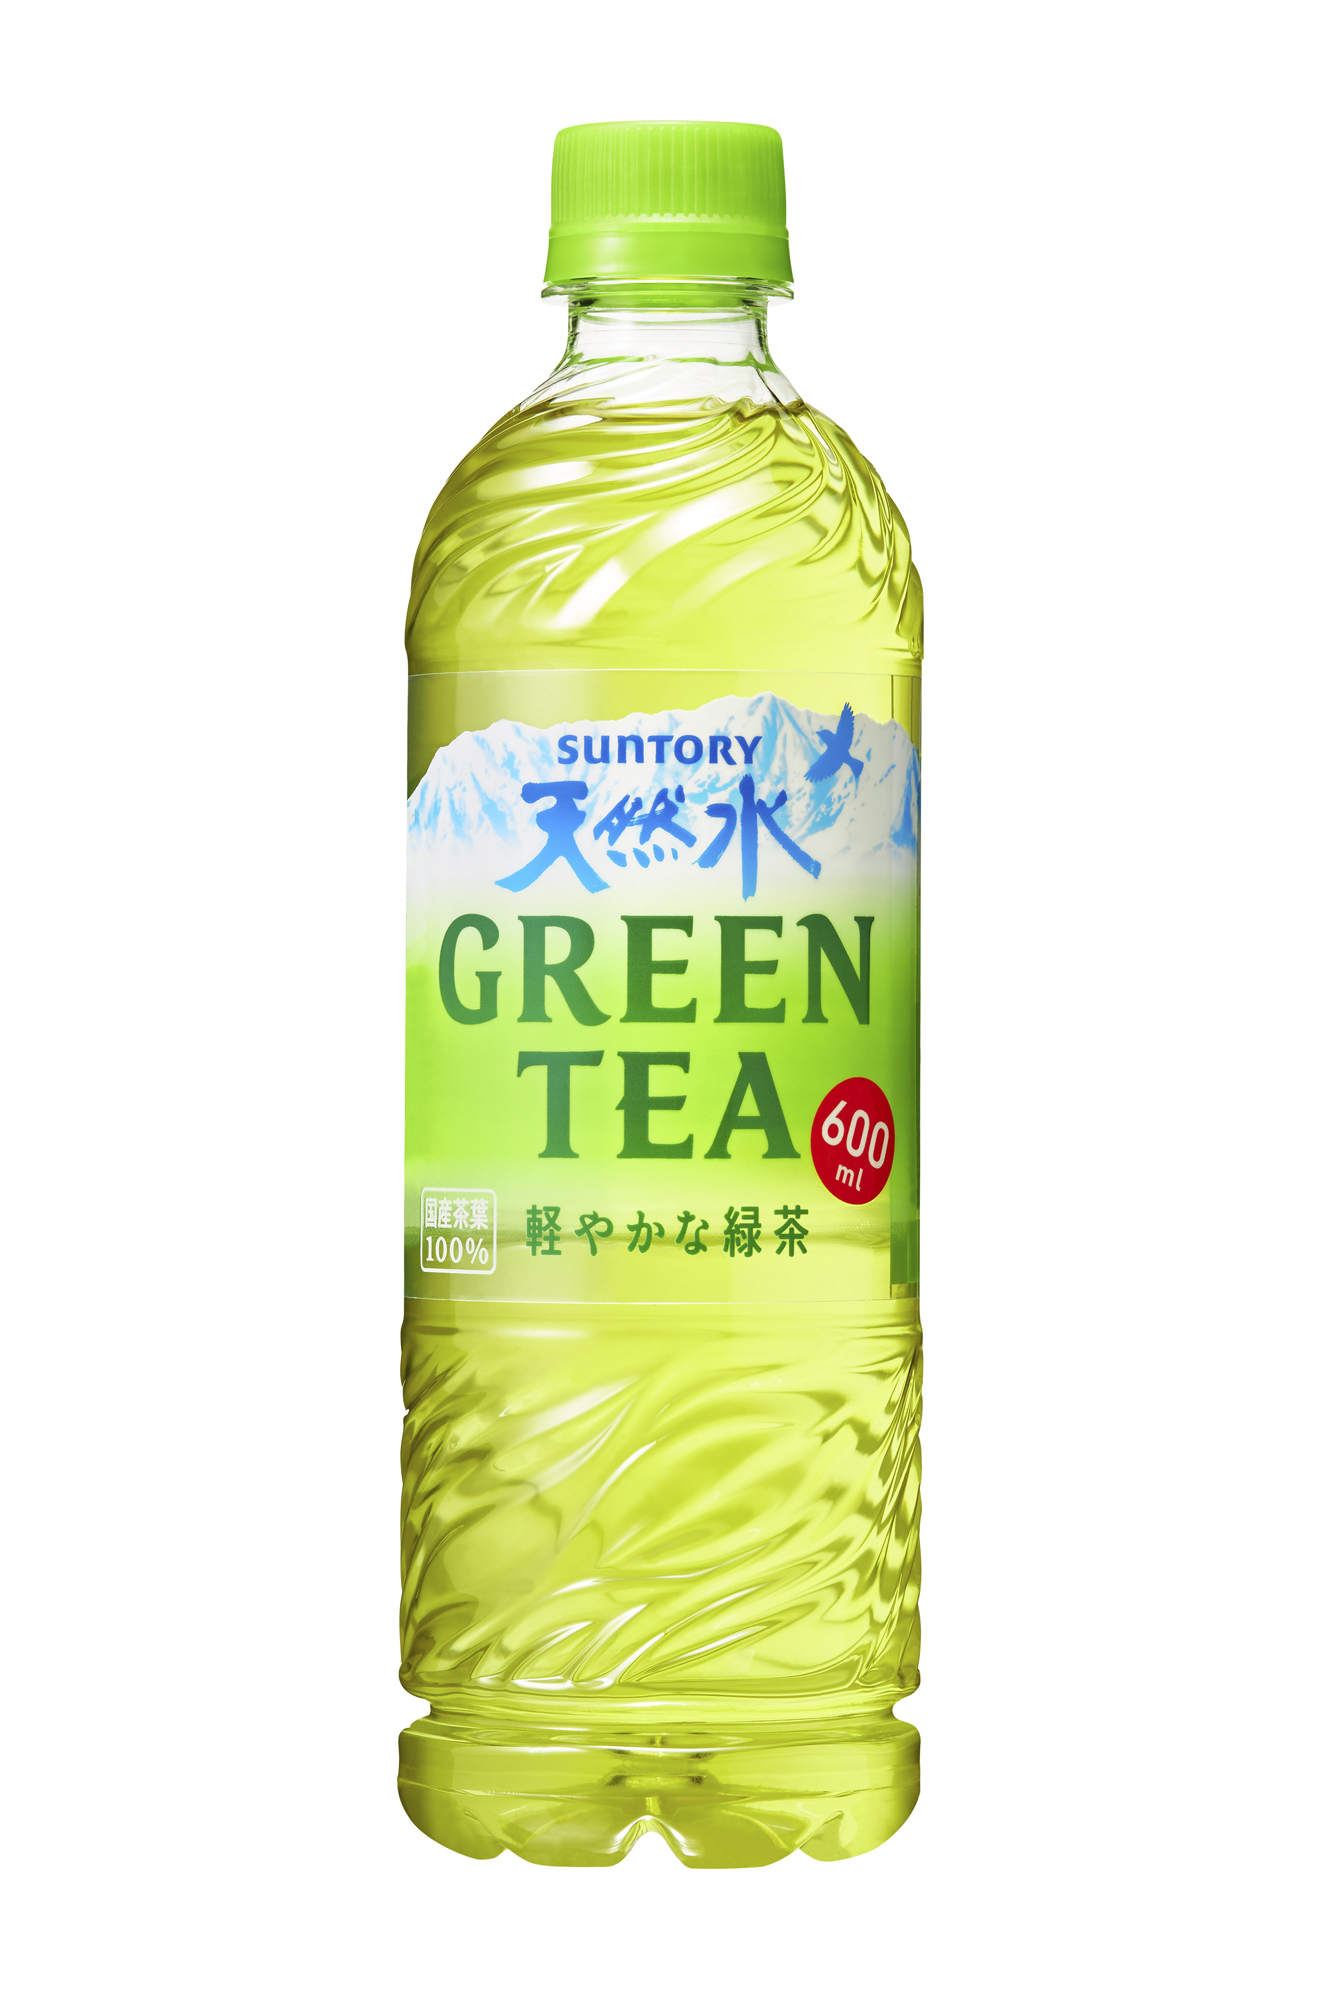 危険 緑茶 水 出し